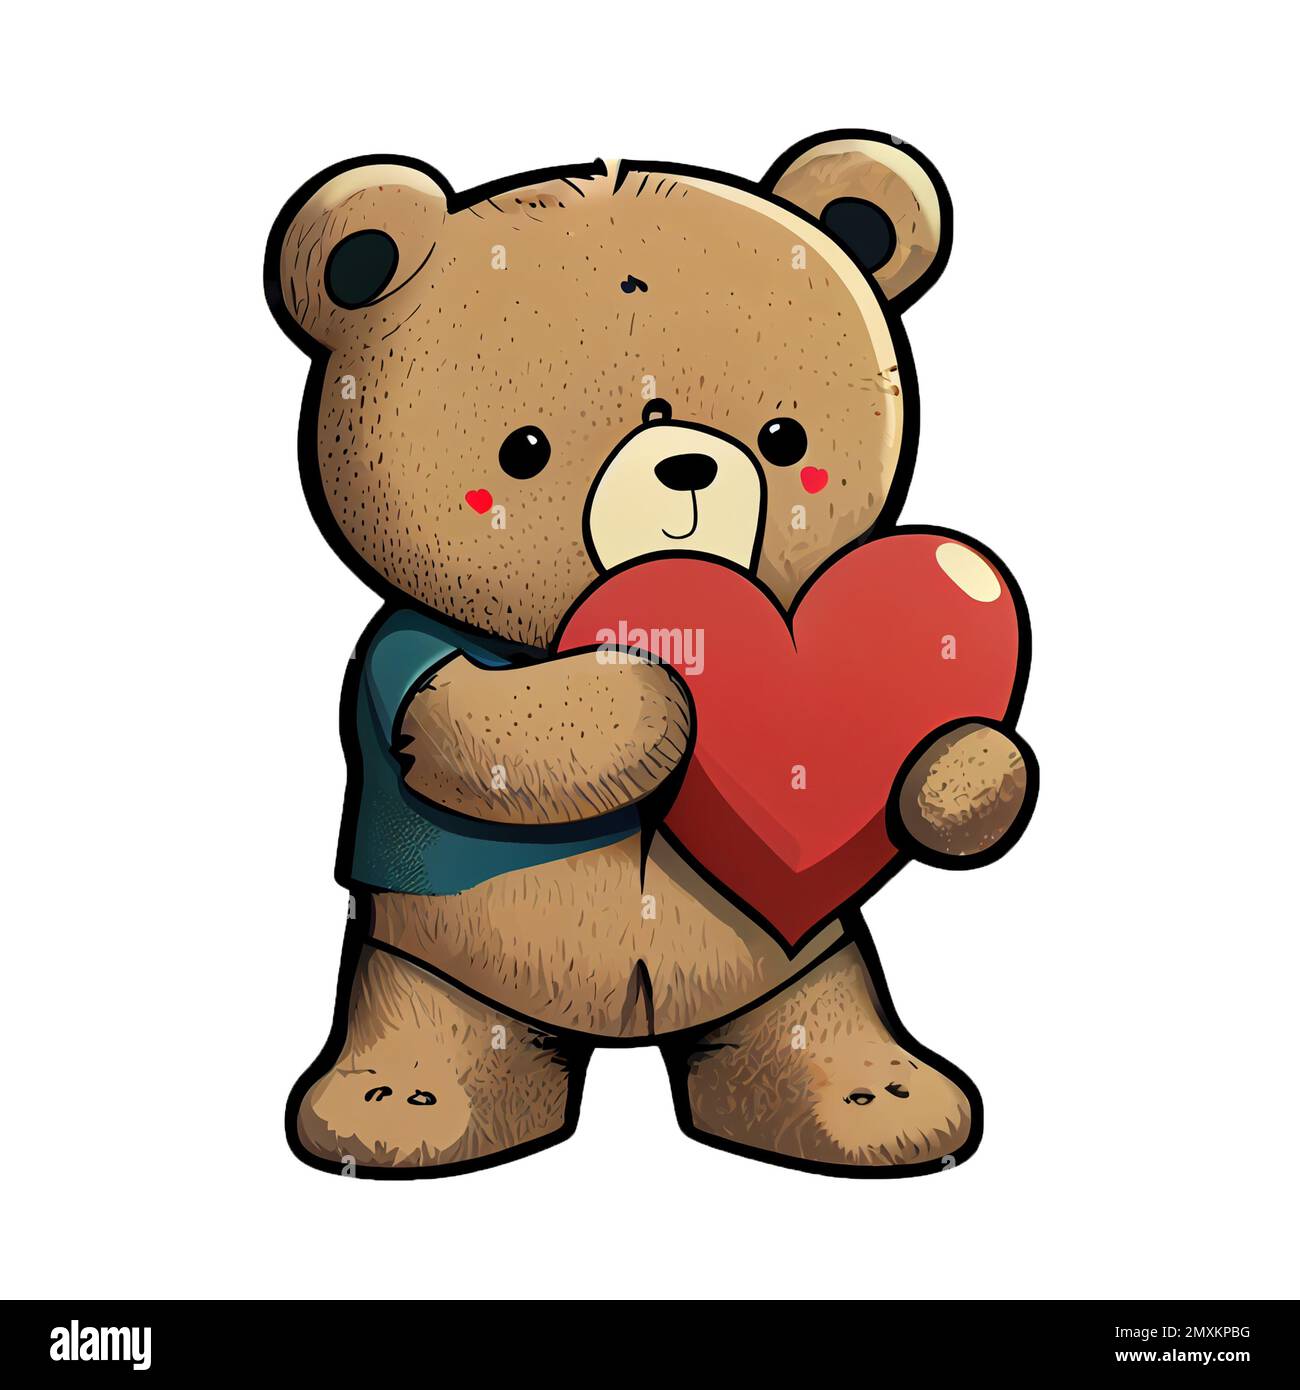 Süßer Teddybär, der einen Cartoon mit Herz isoliert auf transparentem  Hintergrund hält. Valentinskarte, romantische Elemente. Handgezeichnete  Illustration Stockfotografie - Alamy